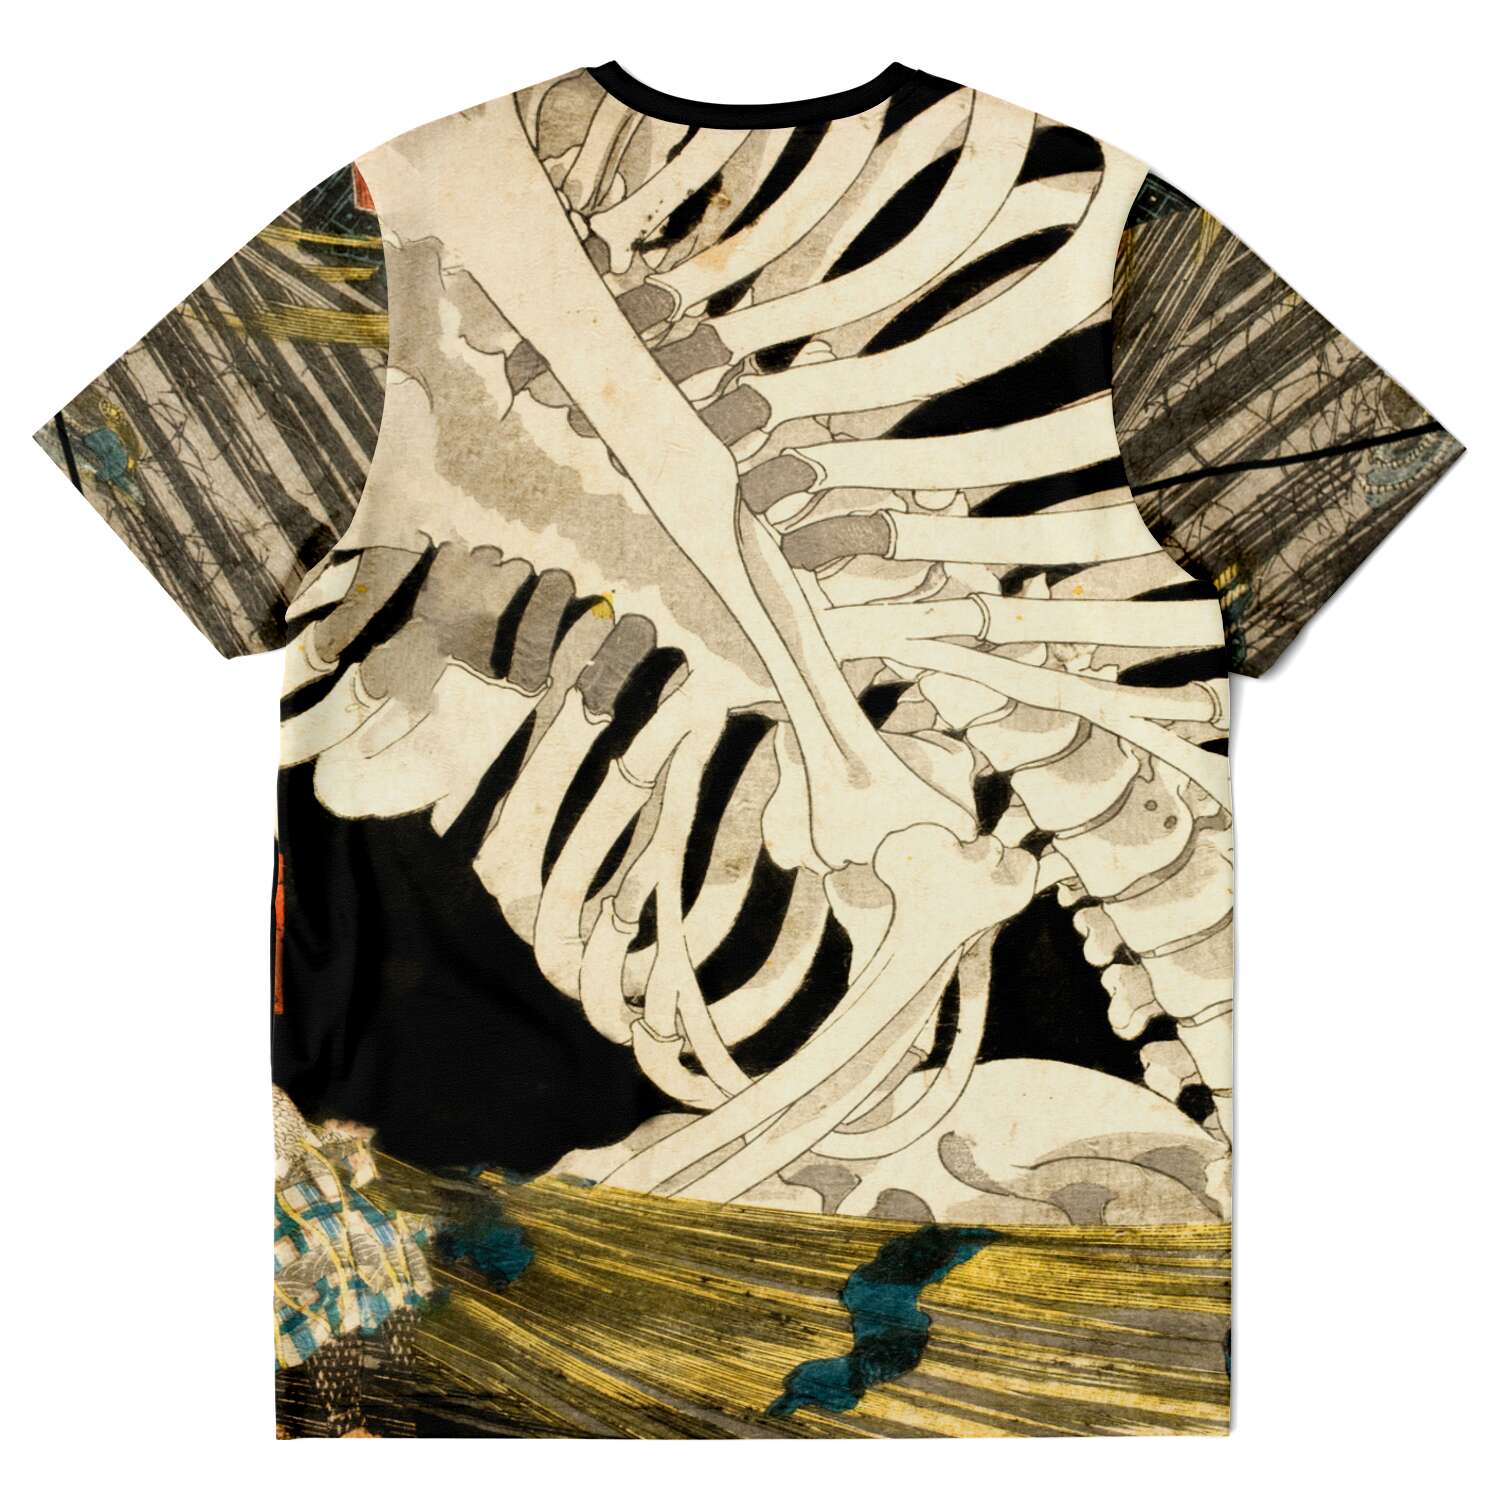 T-shirt XS Utagawa Kuniyoshi: Mitsukuni Defying the Skeleton Spectre Vintage Yokai Supernatural Japanese Mythology Boho Ukiyo-e Graphic T-Shirt